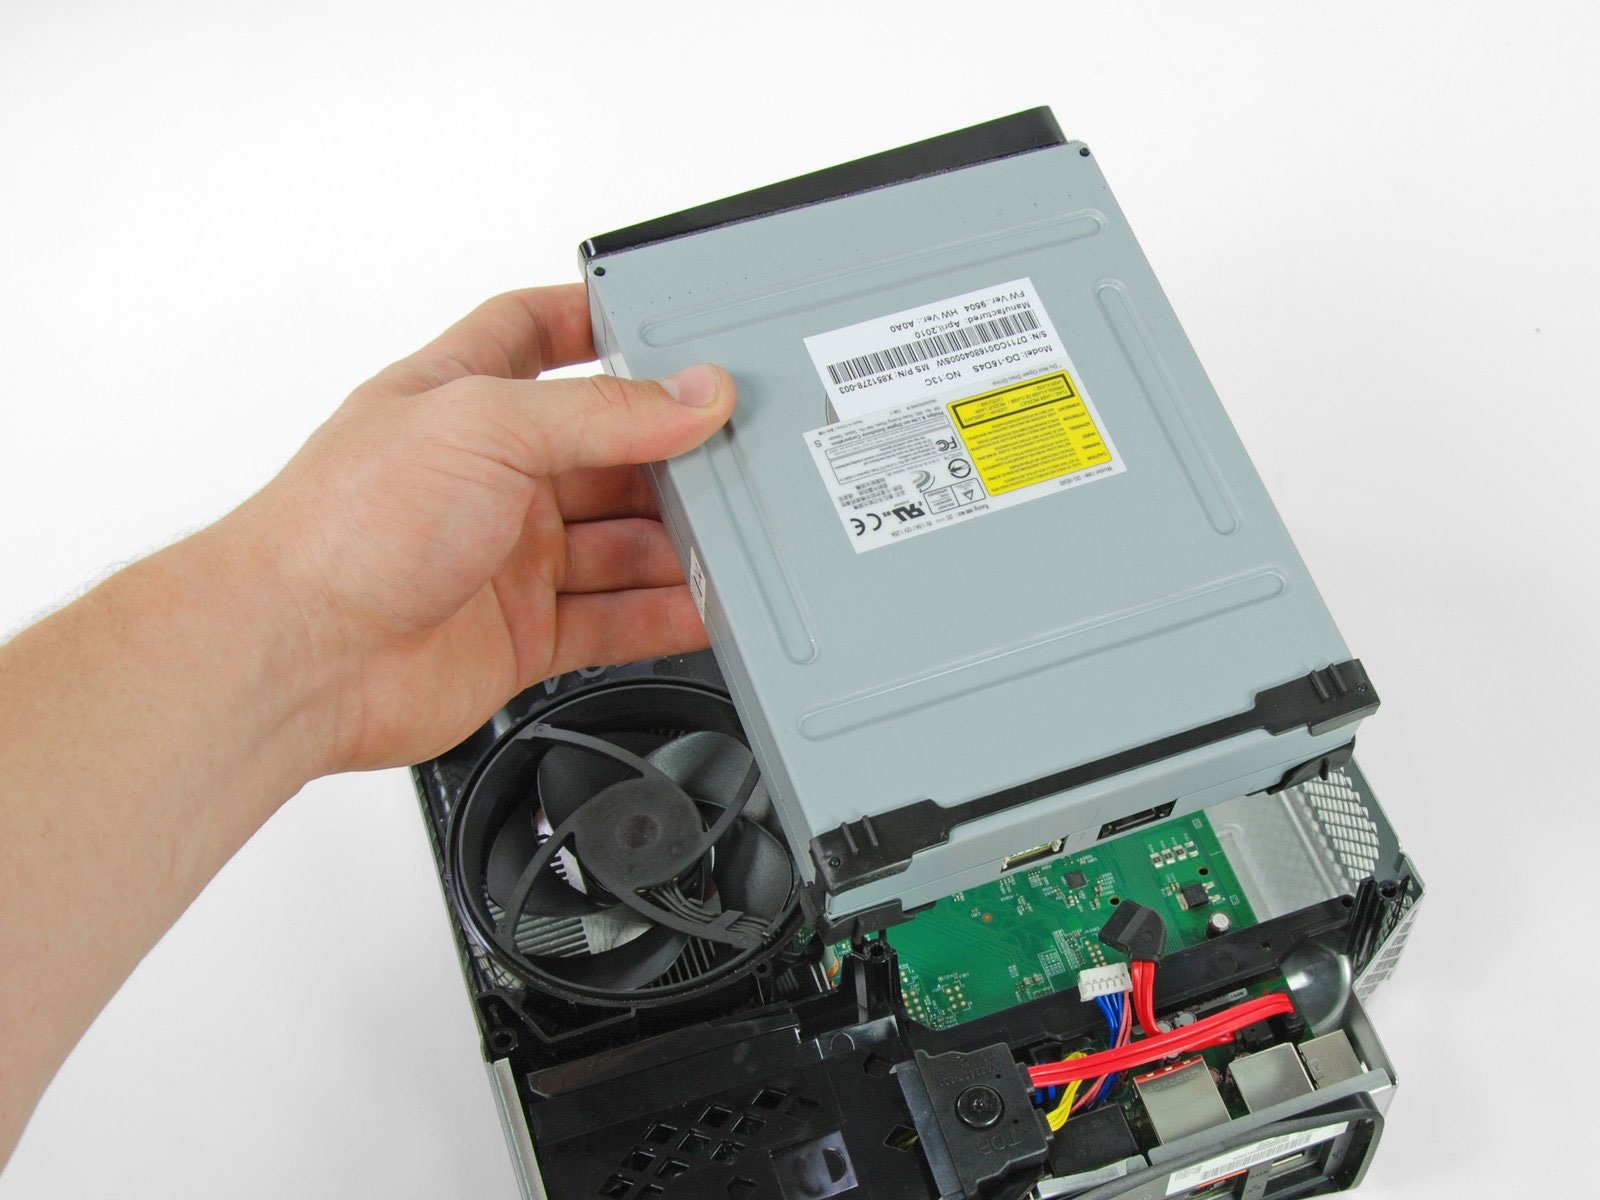 خرید درایو کامل ایکس باکس 360 اسلیم مدل لایت آن Xbox 360 slim optical drive Liteon از وبسایت ایران کنسول . ارسال به سراسر نقاط کشور